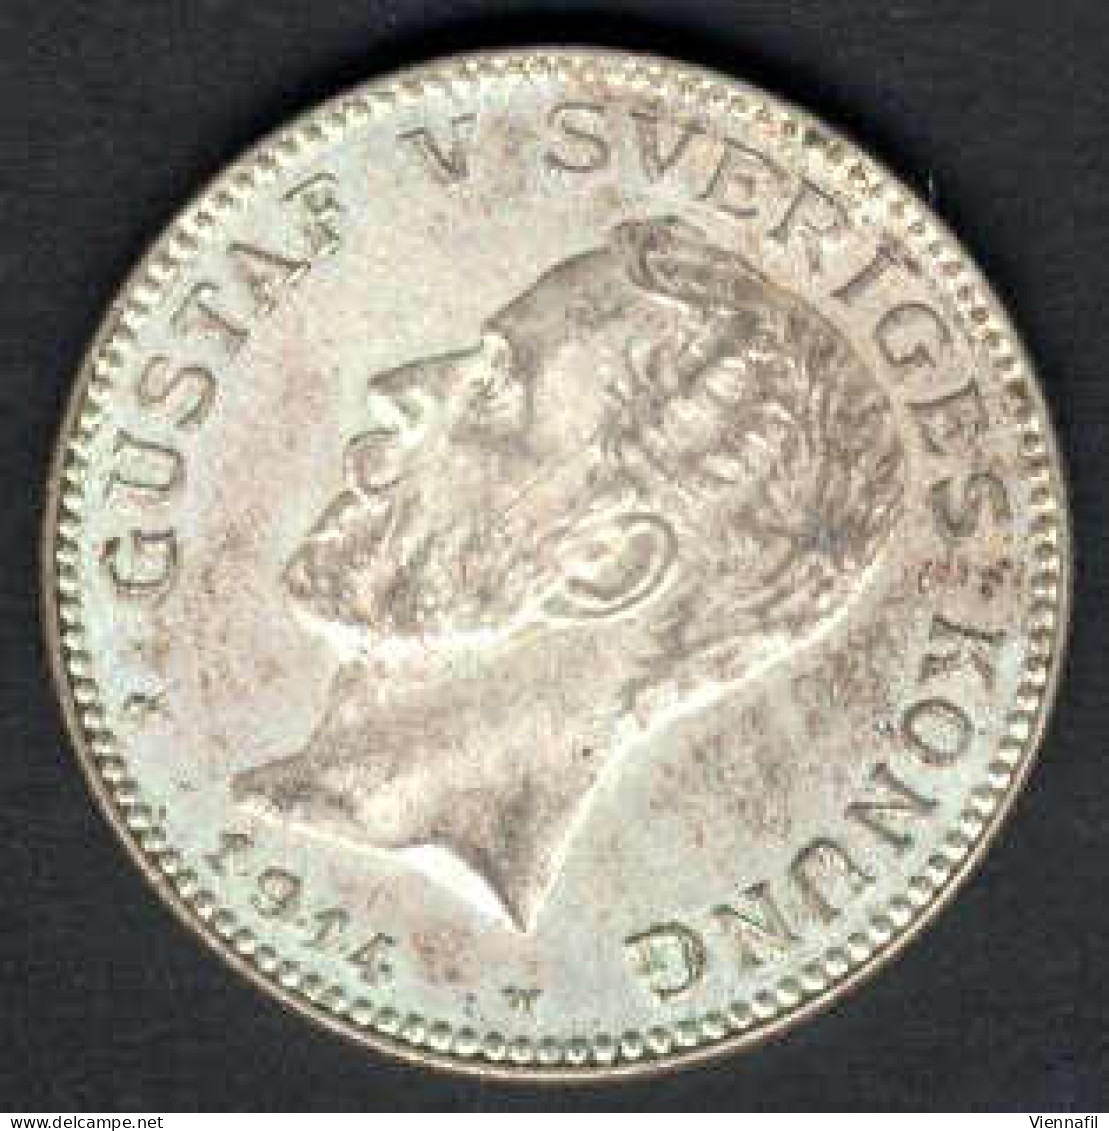 1 Krone, 1/6 Öre, 10, 20 und 50 Öre, 1673/1933, Lot mit sechs Münzen, schön bis vorzüglich, Y. 50.1,20, 47, 21